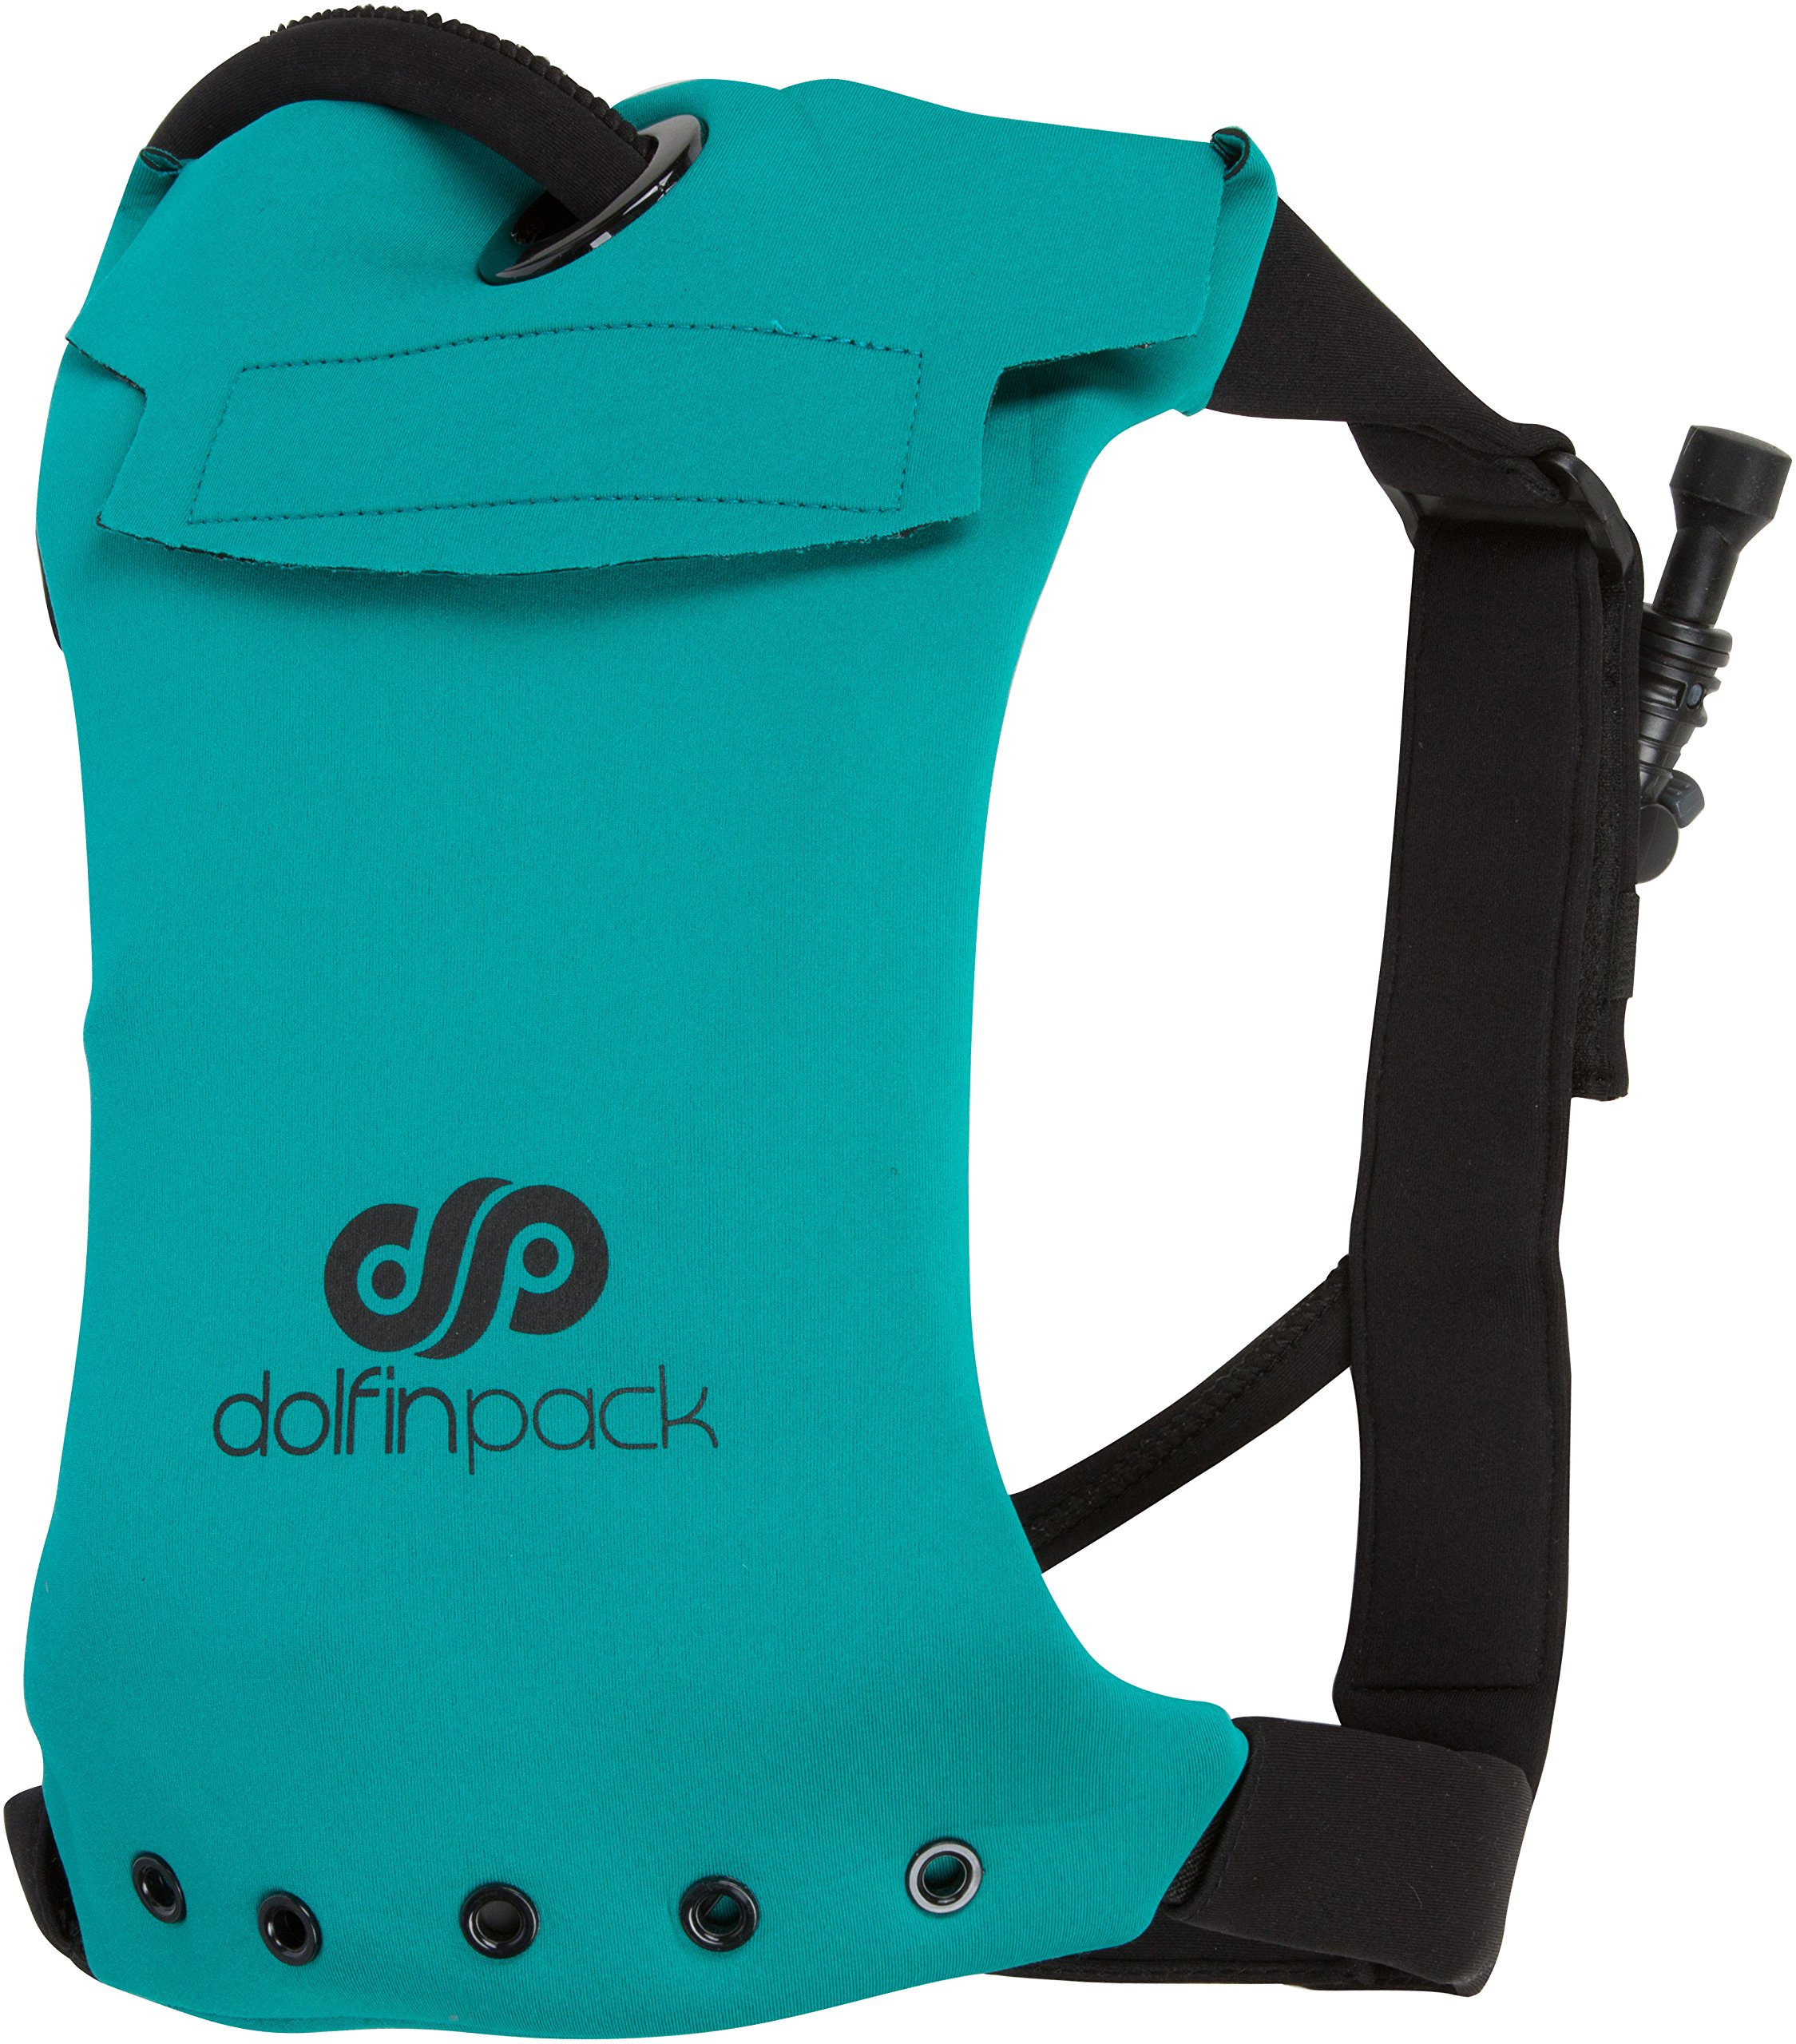 送料無料DolfinPack Lightweight Form-fitting Waterproof Extreme Sports Hydration Pack One Size TealBlack 並行輸